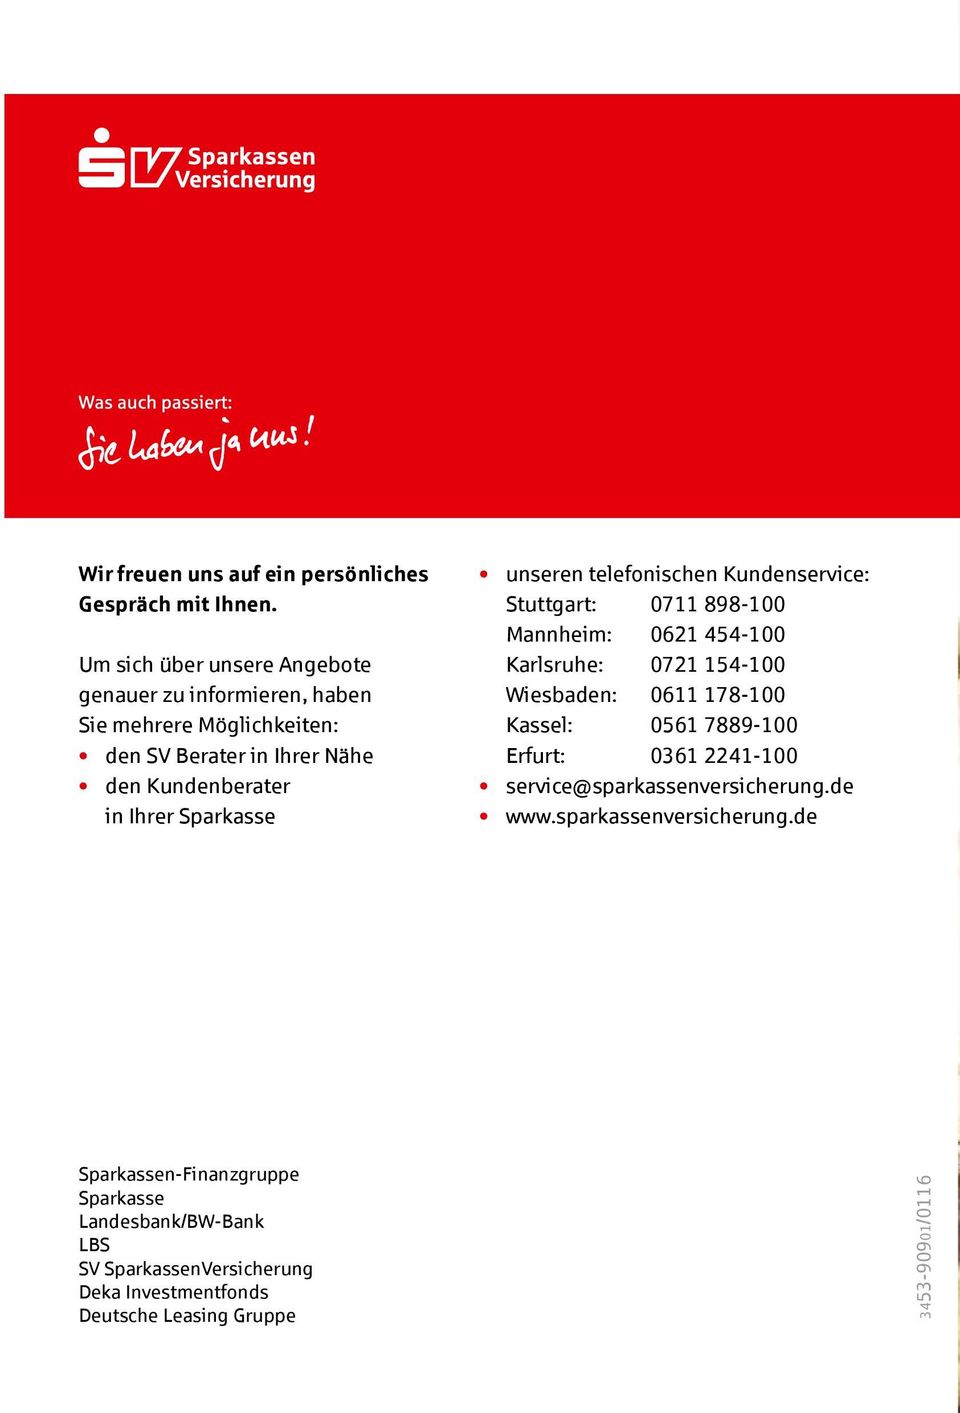 Sparkasse unseren telefonischen Kundenservice: Stuttgart: 0711 898-100 Mannheim: 0621 454-100 Karlsruhe: 0721 154-100 Wiesbaden: 0611 178-100